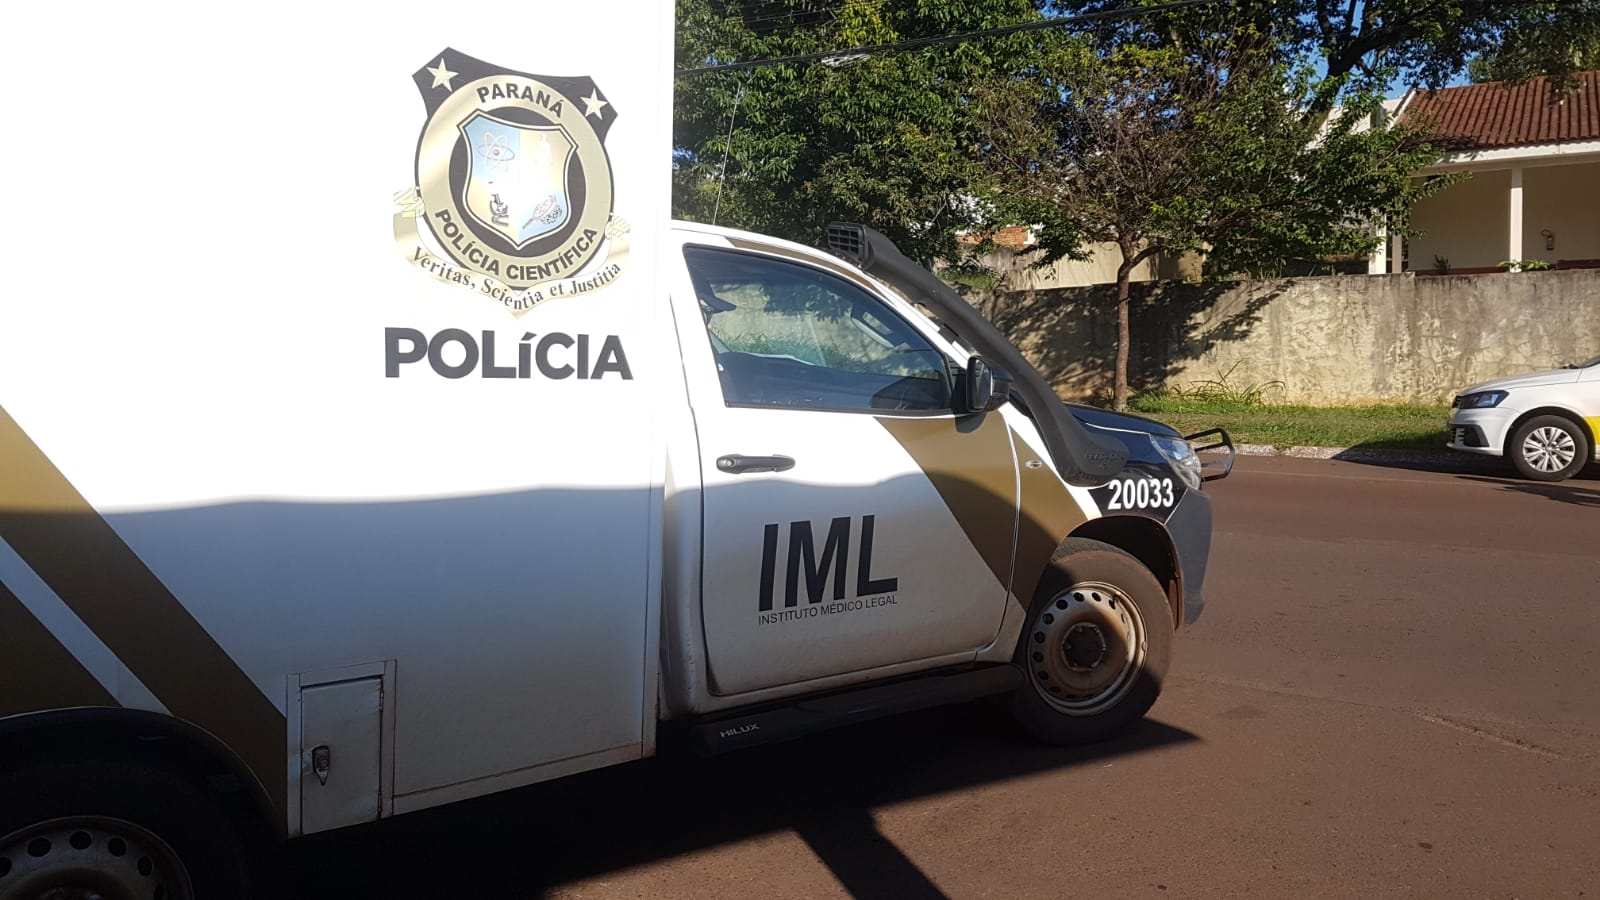 IML de Cascavel é acionado para recolher corpos de assaltantes que morreram em Três Barras do Paraná